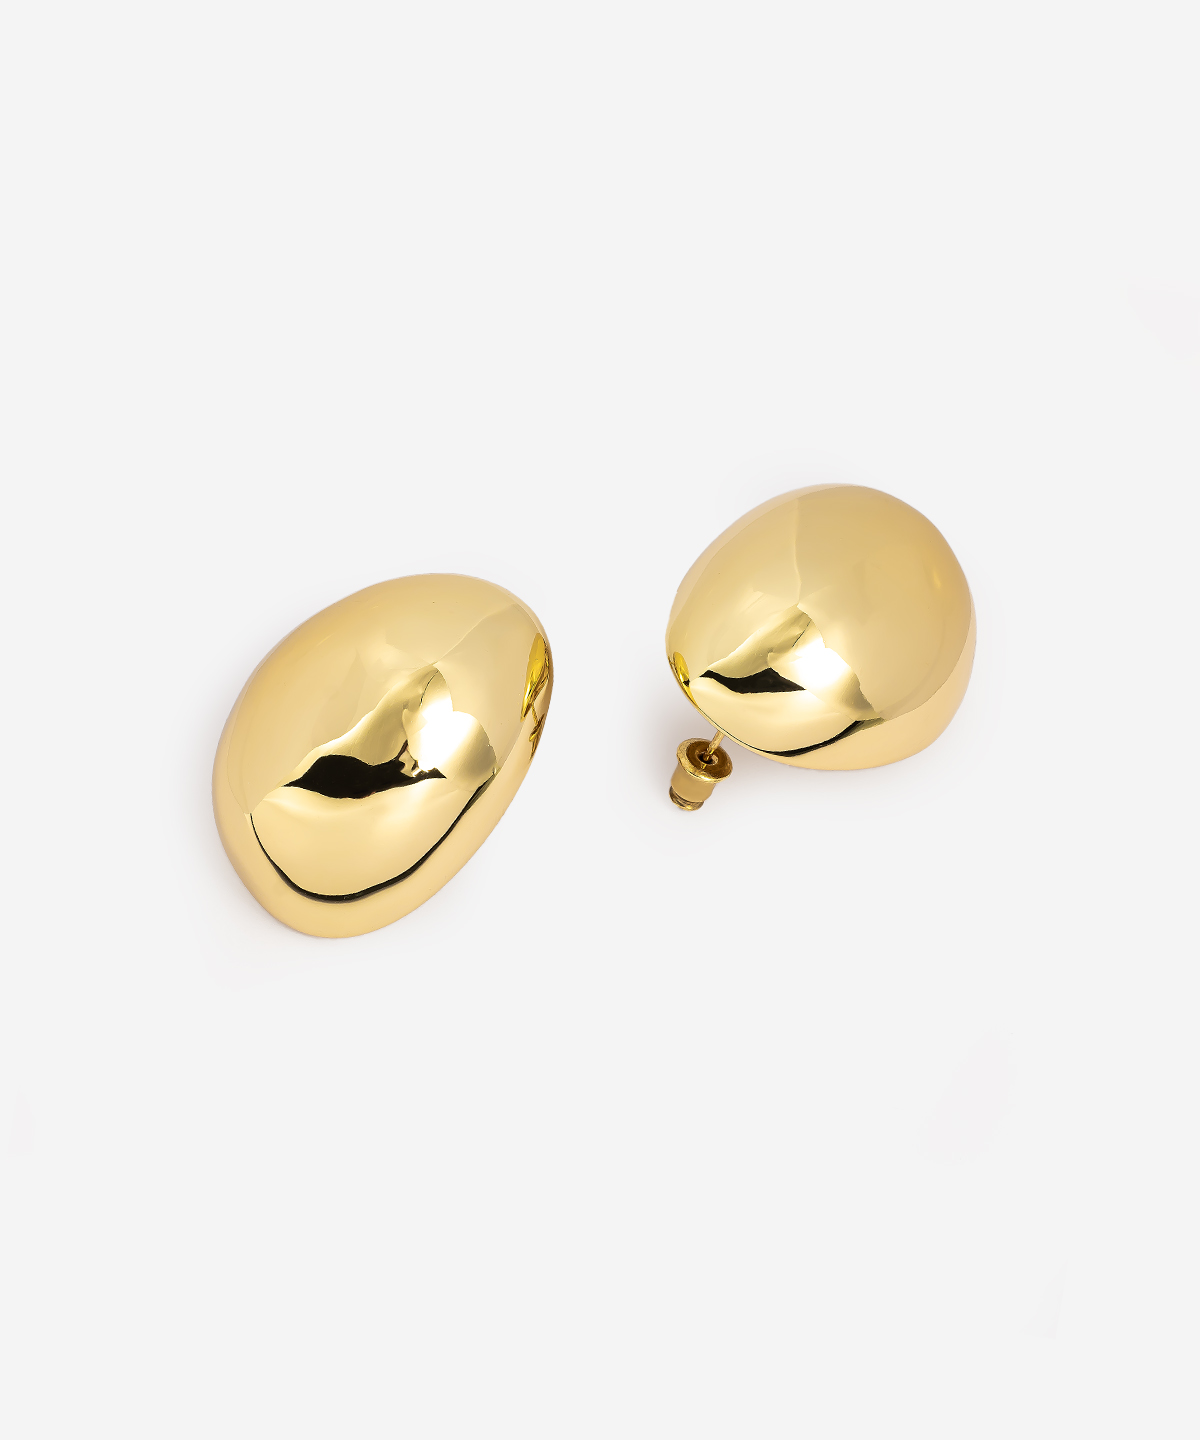 button studds earrings gold